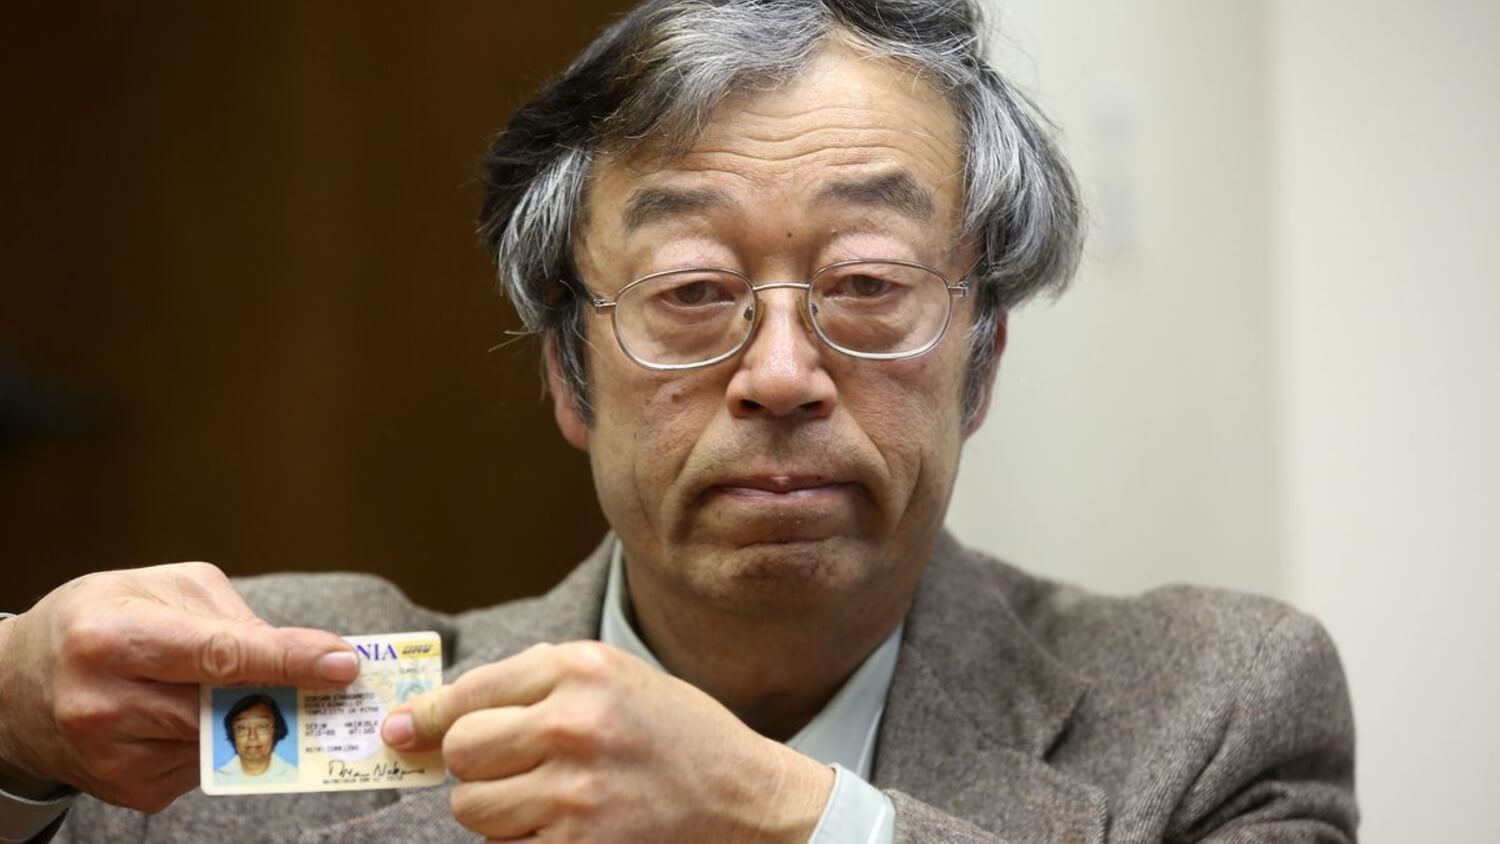 Самые богатые люди в мире криптовалют. Сатоши Накамото изображают так. Хотя на фотографии — Дориан Накамото, который не относится к криптовалюте. Фото.